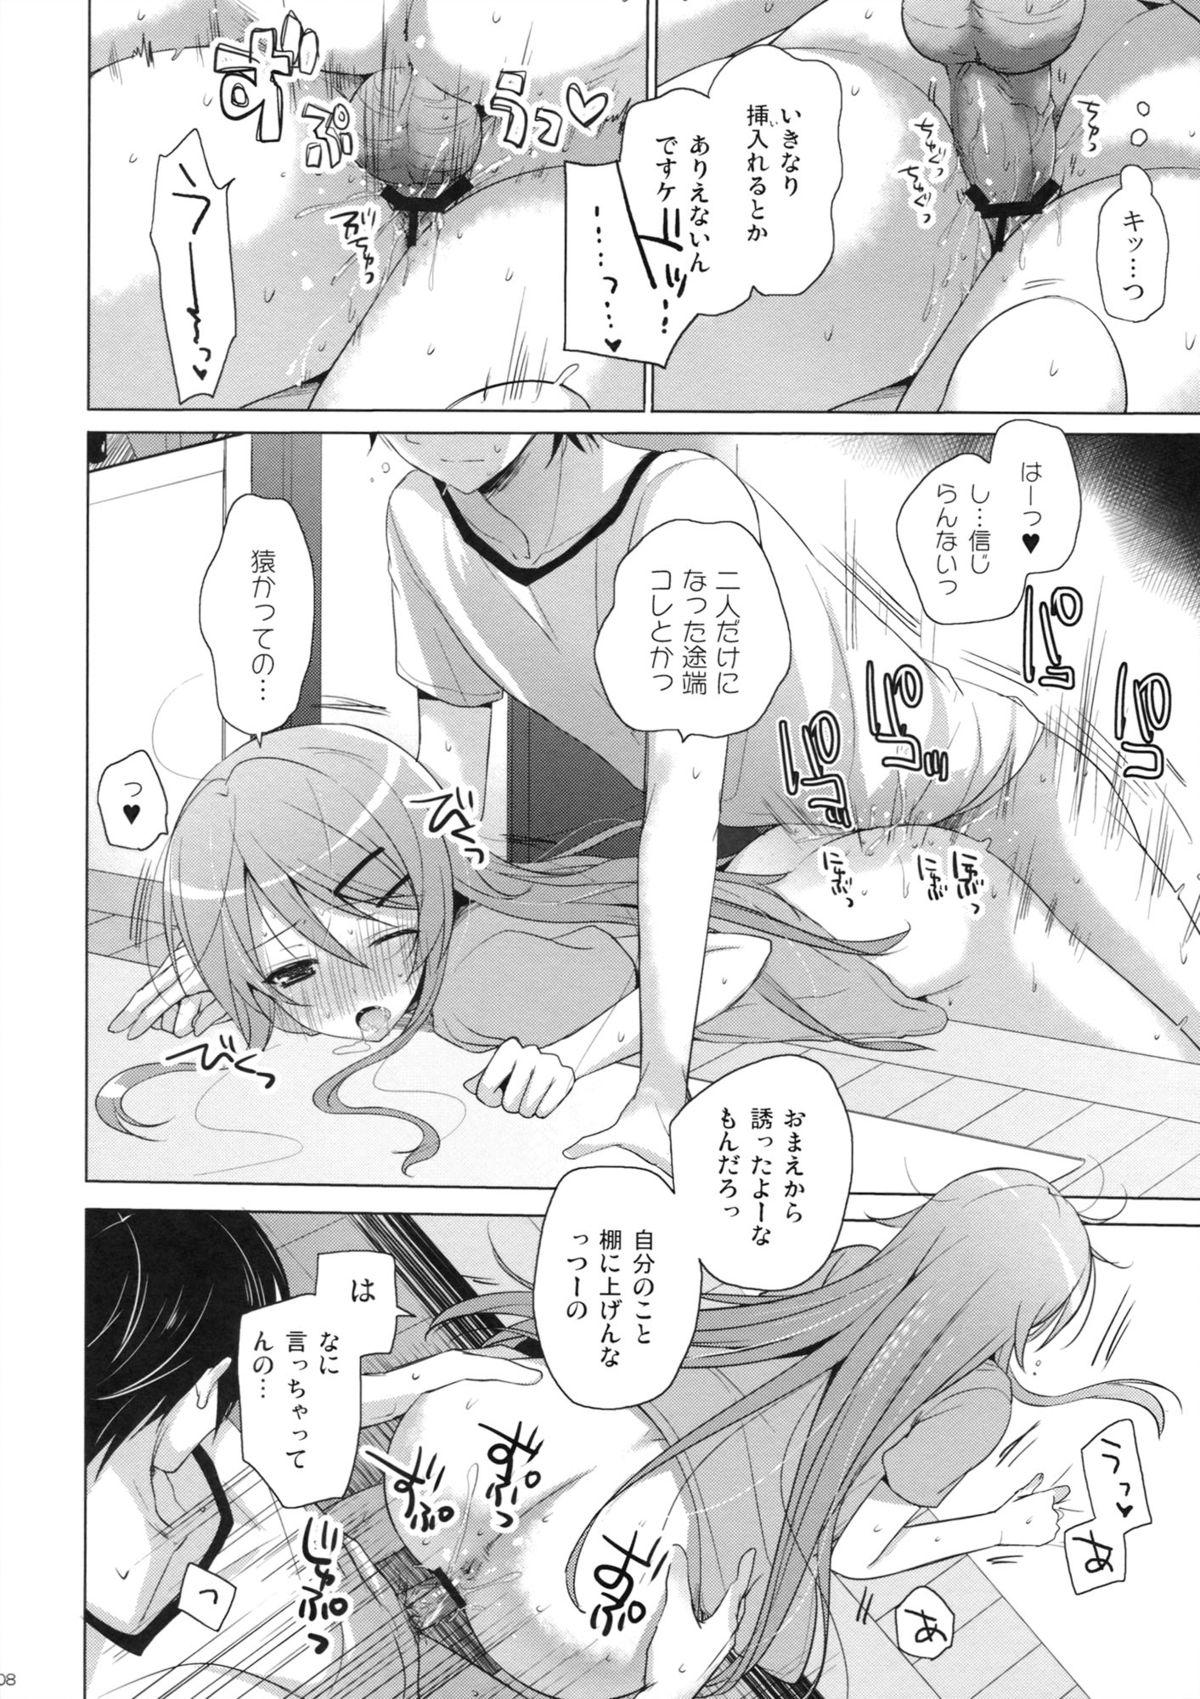 Anime ANOTHER WORLD - Ore no imouto ga konna ni kawaii wake ga nai Doll - Page 7